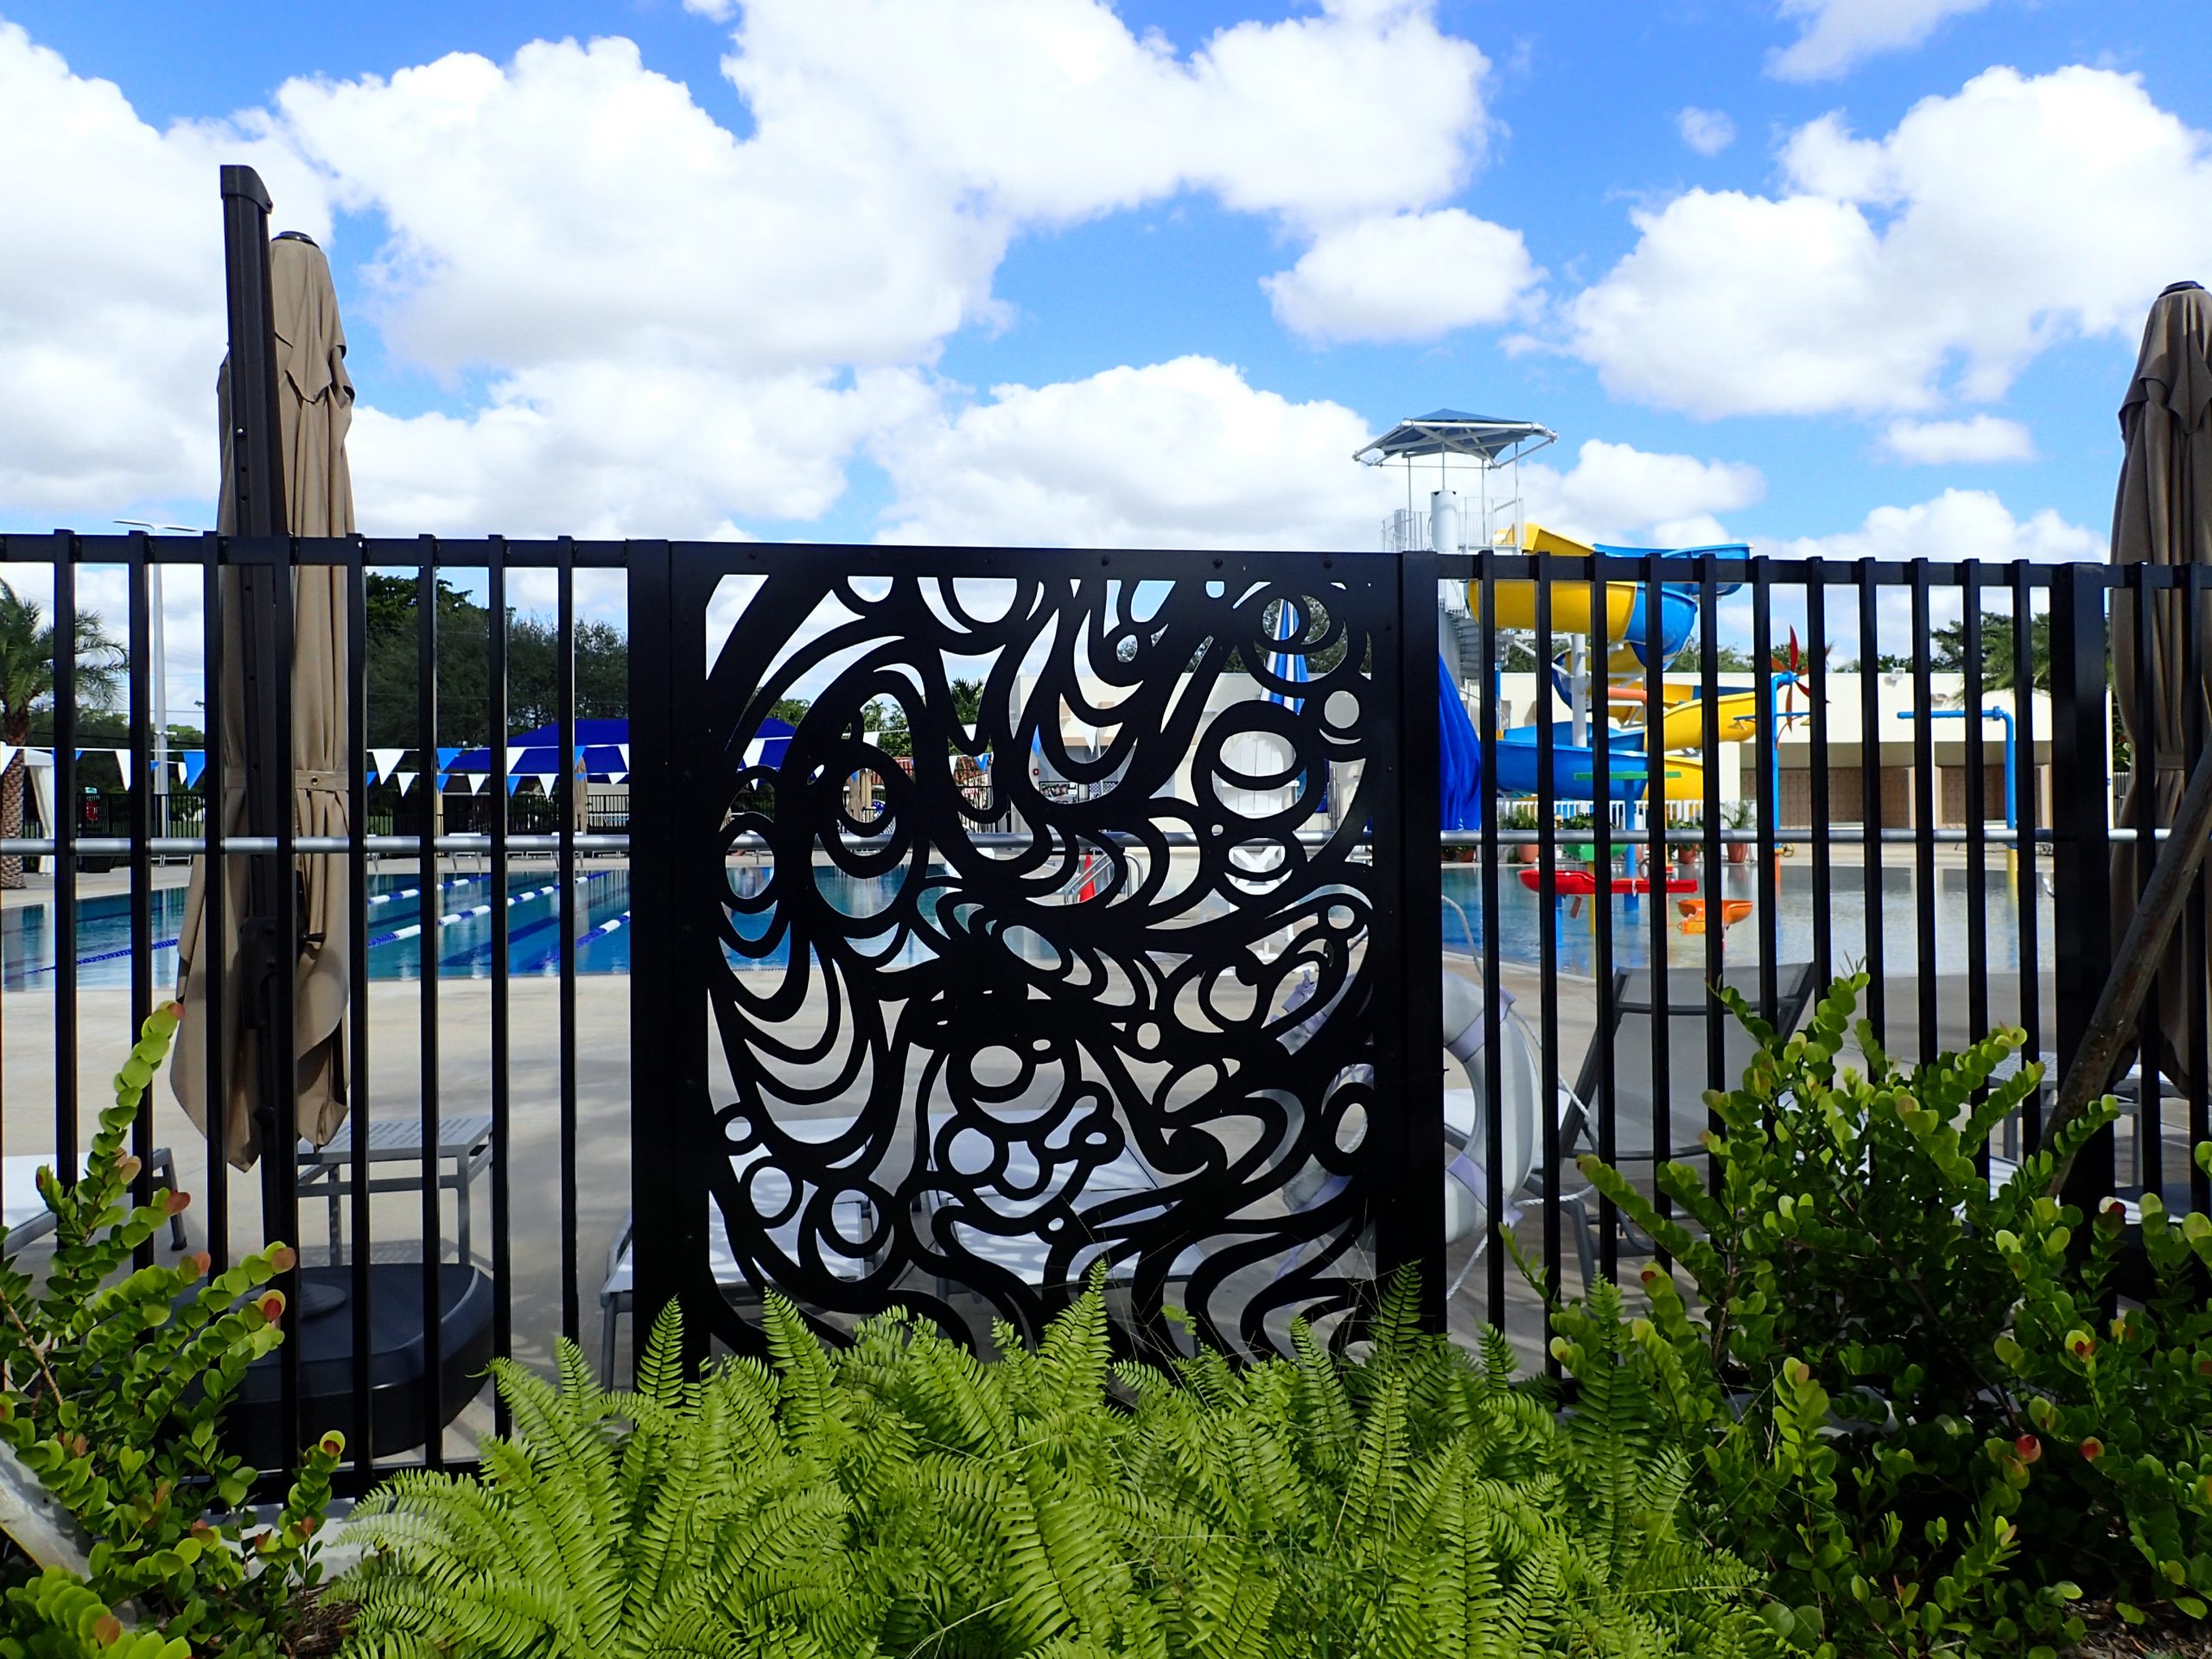 Miami Springs Aquatic Center – Sculpture & Decorative Fence